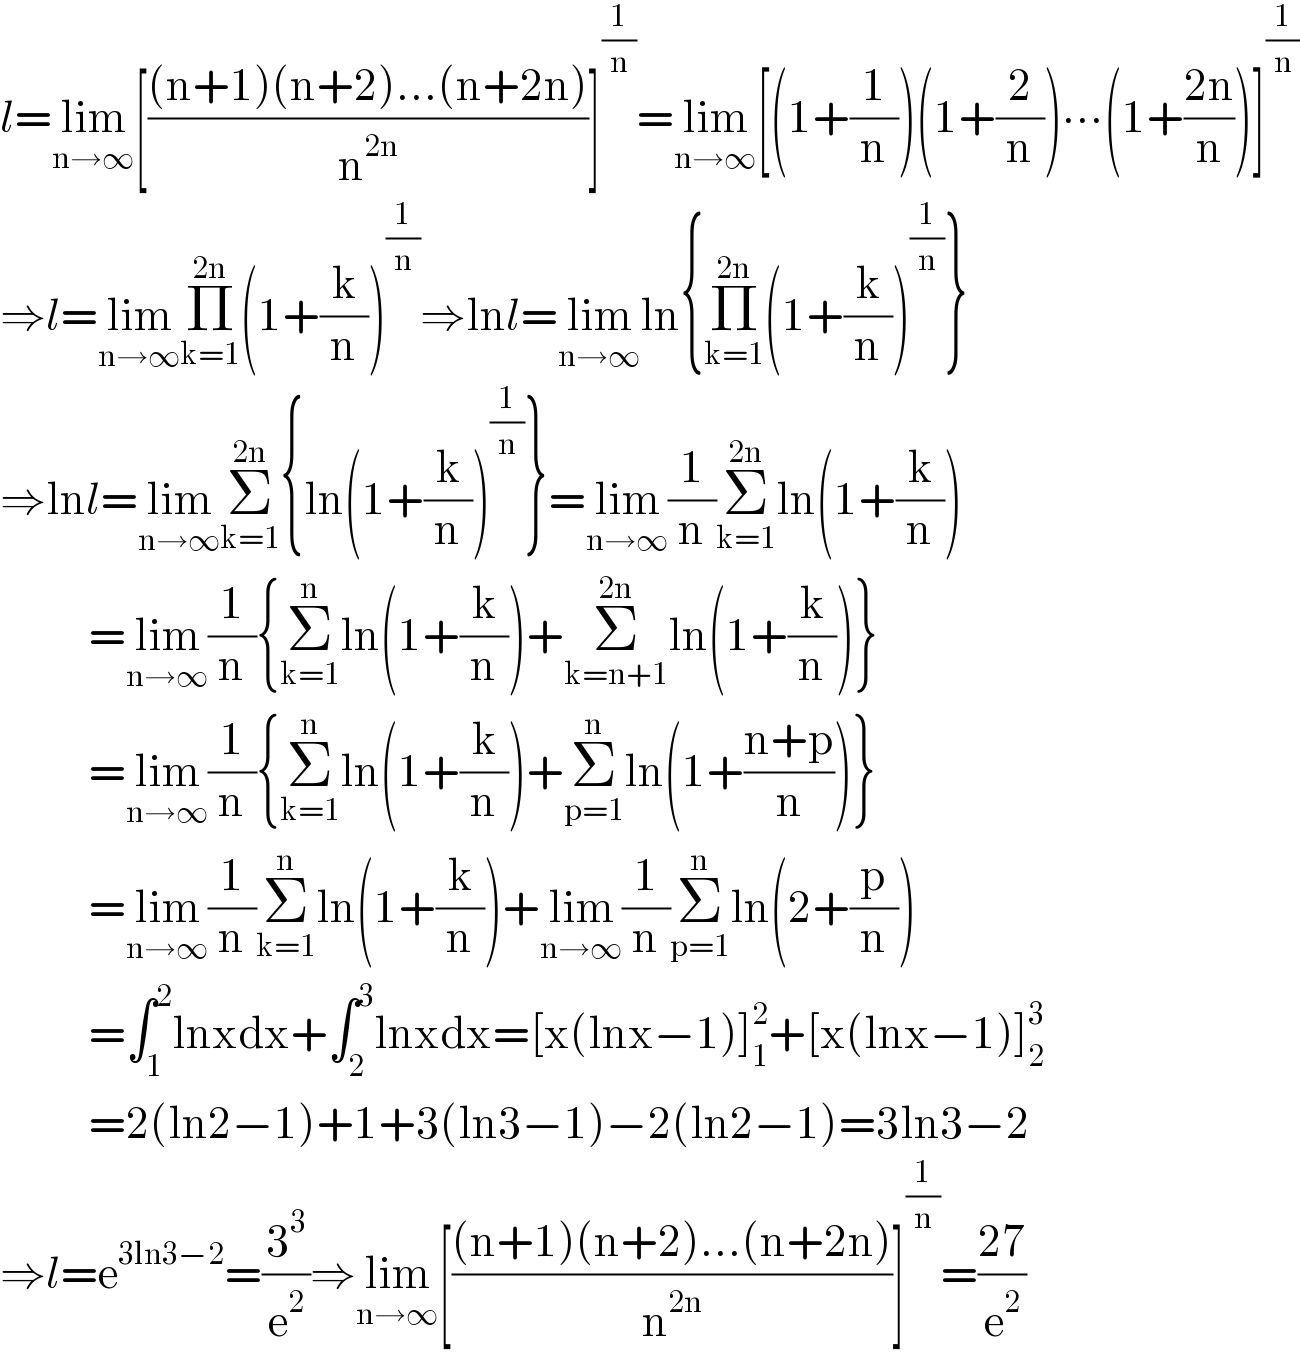 l=lim_(n→∞) [(((n+1)(n+2)...(n+2n))/n^(2n) )]^(1/n) =lim_(n→∞) [(1+(1/n))(1+(2/n))∙∙∙(1+((2n)/n))]^(1/n)   ⇒l=lim_(n→∞) Π_(k=1) ^(2n) (1+(k/n))^(1/n) ⇒lnl=lim_(n→∞) ln{Π_(k=1) ^(2n) (1+(k/n))^(1/n) }  ⇒lnl=lim_(n→∞) Σ_(k=1) ^(2n) {ln(1+(k/n))^(1/n) }=lim_(n→∞) (1/n)Σ_(k=1) ^(2n) ln(1+(k/n))             =lim_(n→∞) (1/n){Σ_(k=1) ^n ln(1+(k/n))+Σ_(k=n+1) ^(2n) ln(1+(k/n))}             =lim_(n→∞) (1/n){Σ_(k=1) ^n ln(1+(k/n))+Σ_(p=1) ^n ln(1+((n+p)/n))}             =lim_(n→∞) (1/n)Σ_(k=1) ^n ln(1+(k/n))+lim_(n→∞) (1/n)Σ_(p=1) ^n ln(2+(p/n))             =∫_1 ^2 lnxdx+∫_2 ^3 lnxdx=[x(lnx−1)]_1 ^2 +[x(lnx−1)]_2 ^3              =2(ln2−1)+1+3(ln3−1)−2(ln2−1)=3ln3−2  ⇒l=e^(3ln3−2) =(3^3 /e^2 )⇒lim_(n→∞) [(((n+1)(n+2)...(n+2n))/n^(2n) )]^(1/n) =((27)/e^2 )  